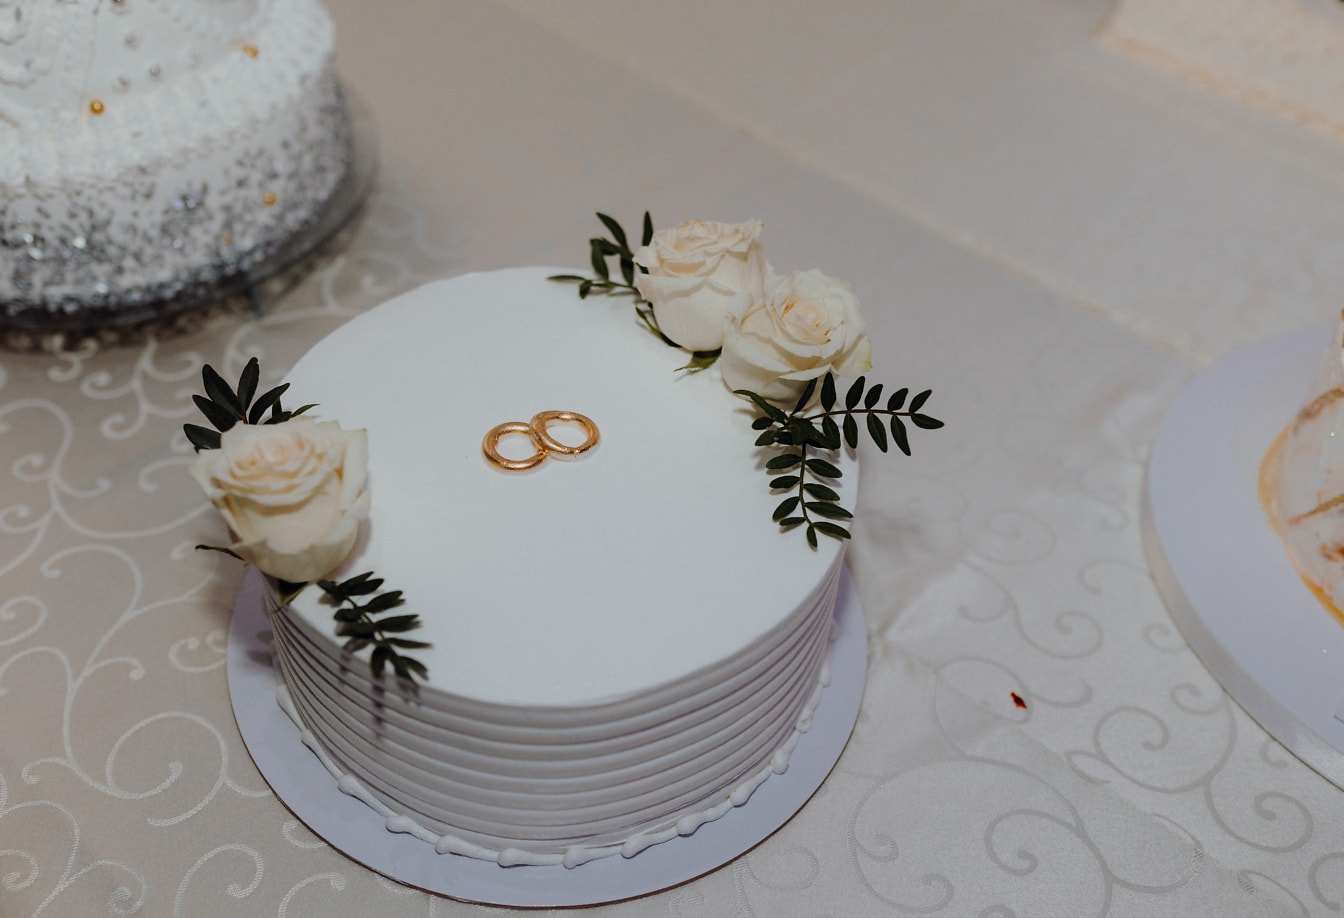 Bolo de casamento branco com alianças de casamento douradas no topo e rosas brancas como decoração